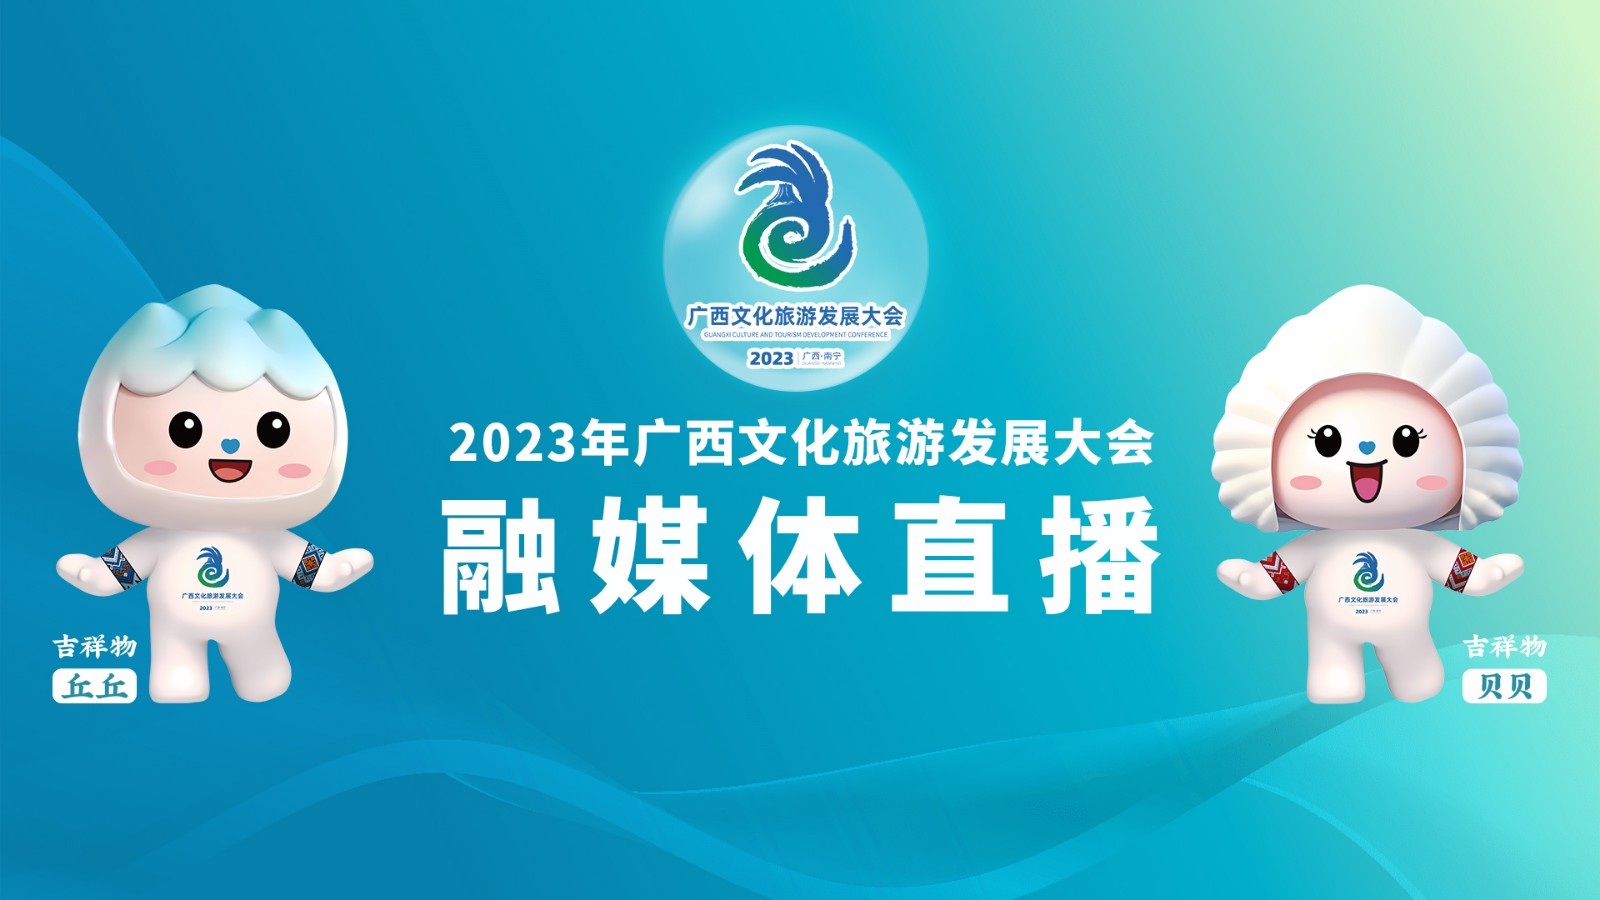 2023年广西文化旅游发展大会融媒体直播